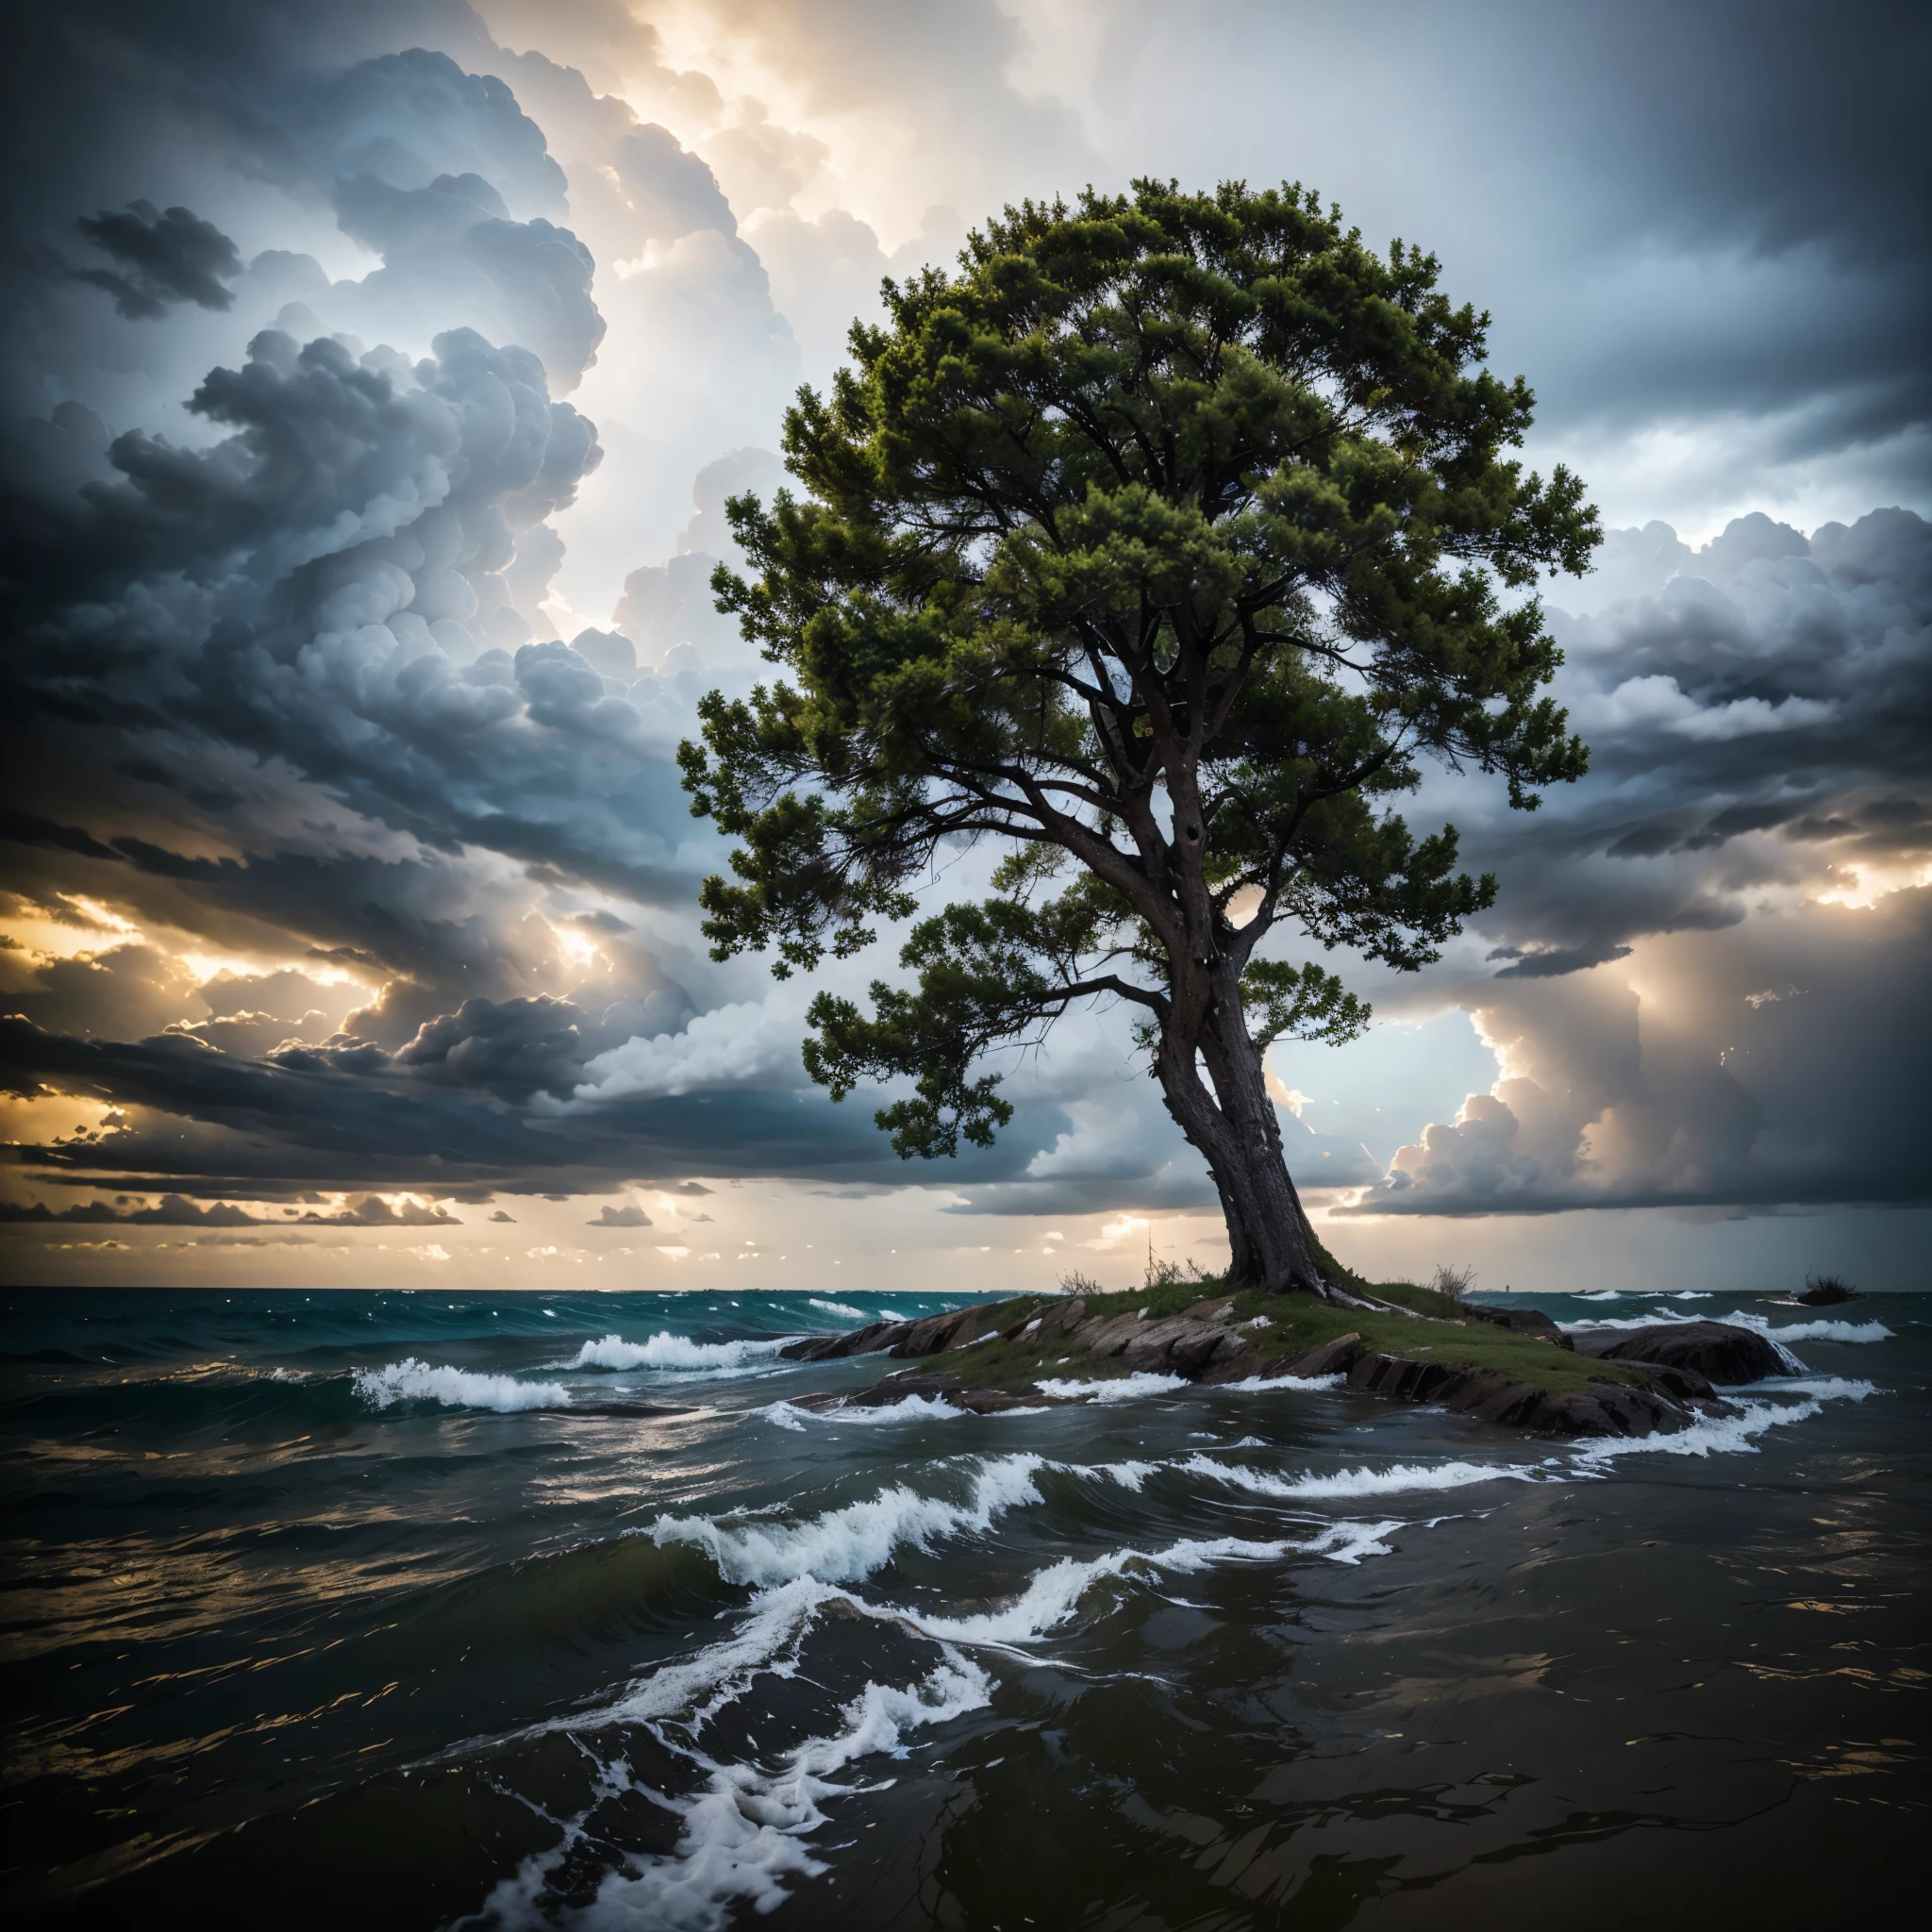 Un arbre résistant au milieu des tempêtes, mettre en évidence la résilience qui naît des défis.